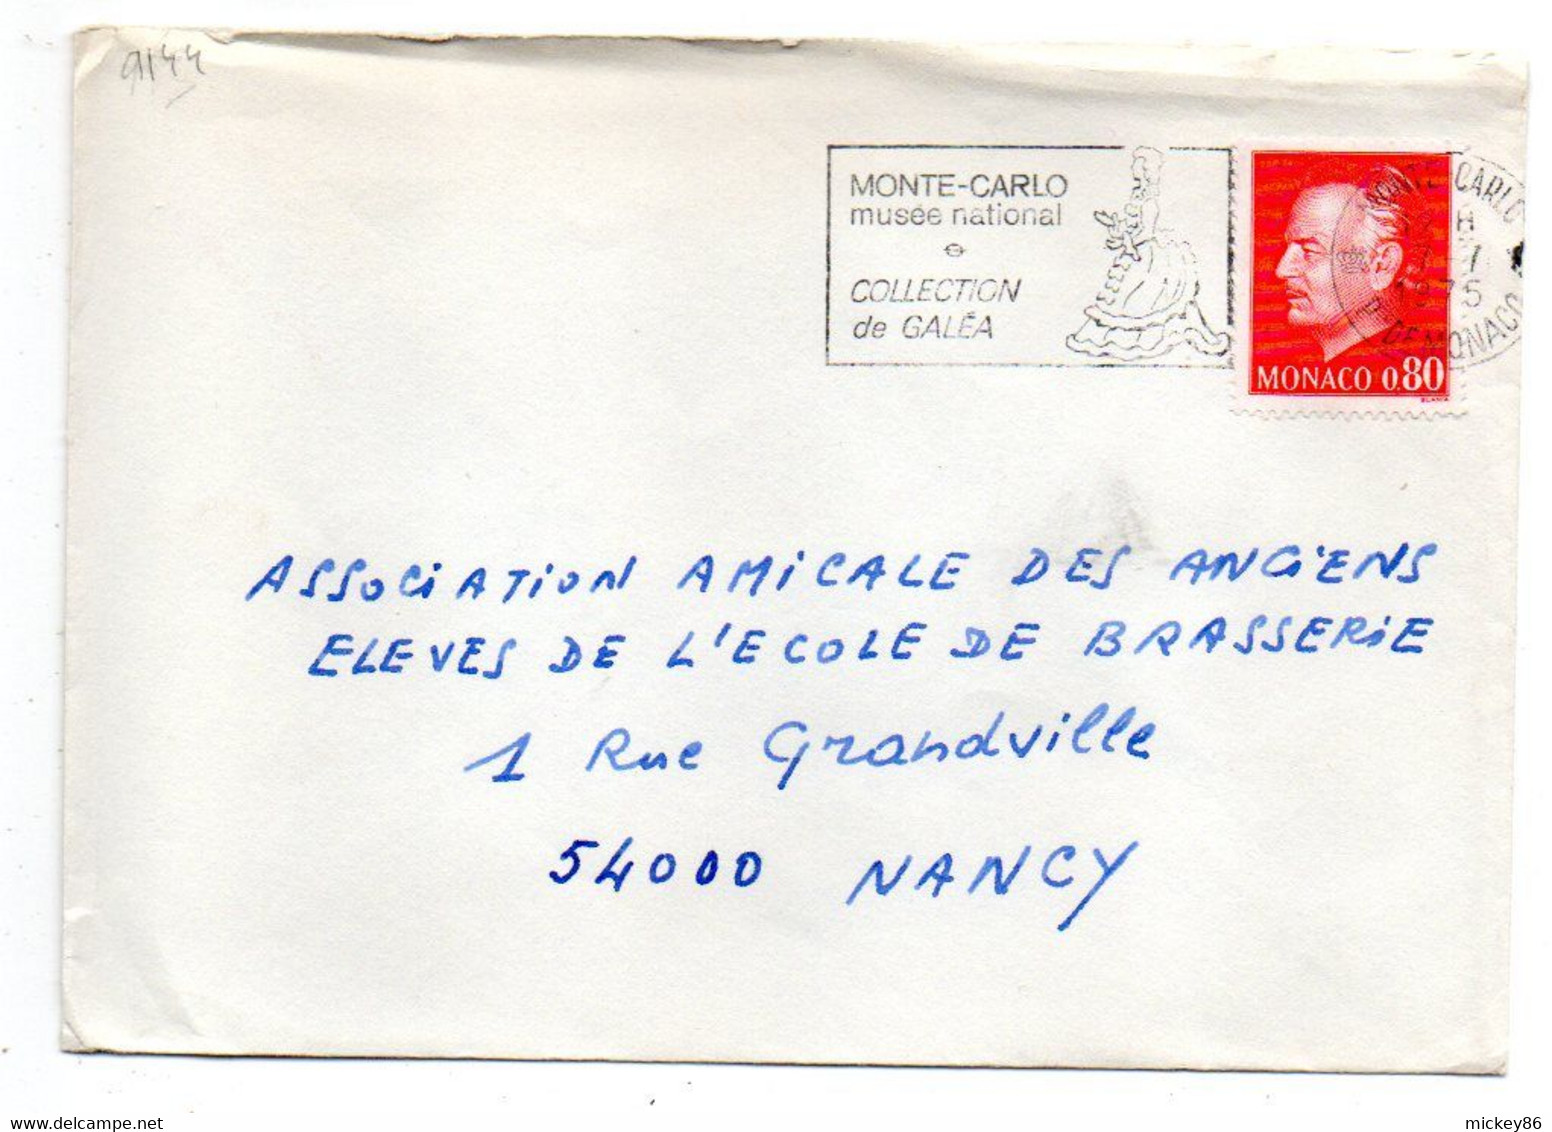 Monaco -1975- Lettre De Monte-Carlo Pour NANCY (France)....tp...cachet  Musée National Et Collec Galéa - Cartas & Documentos